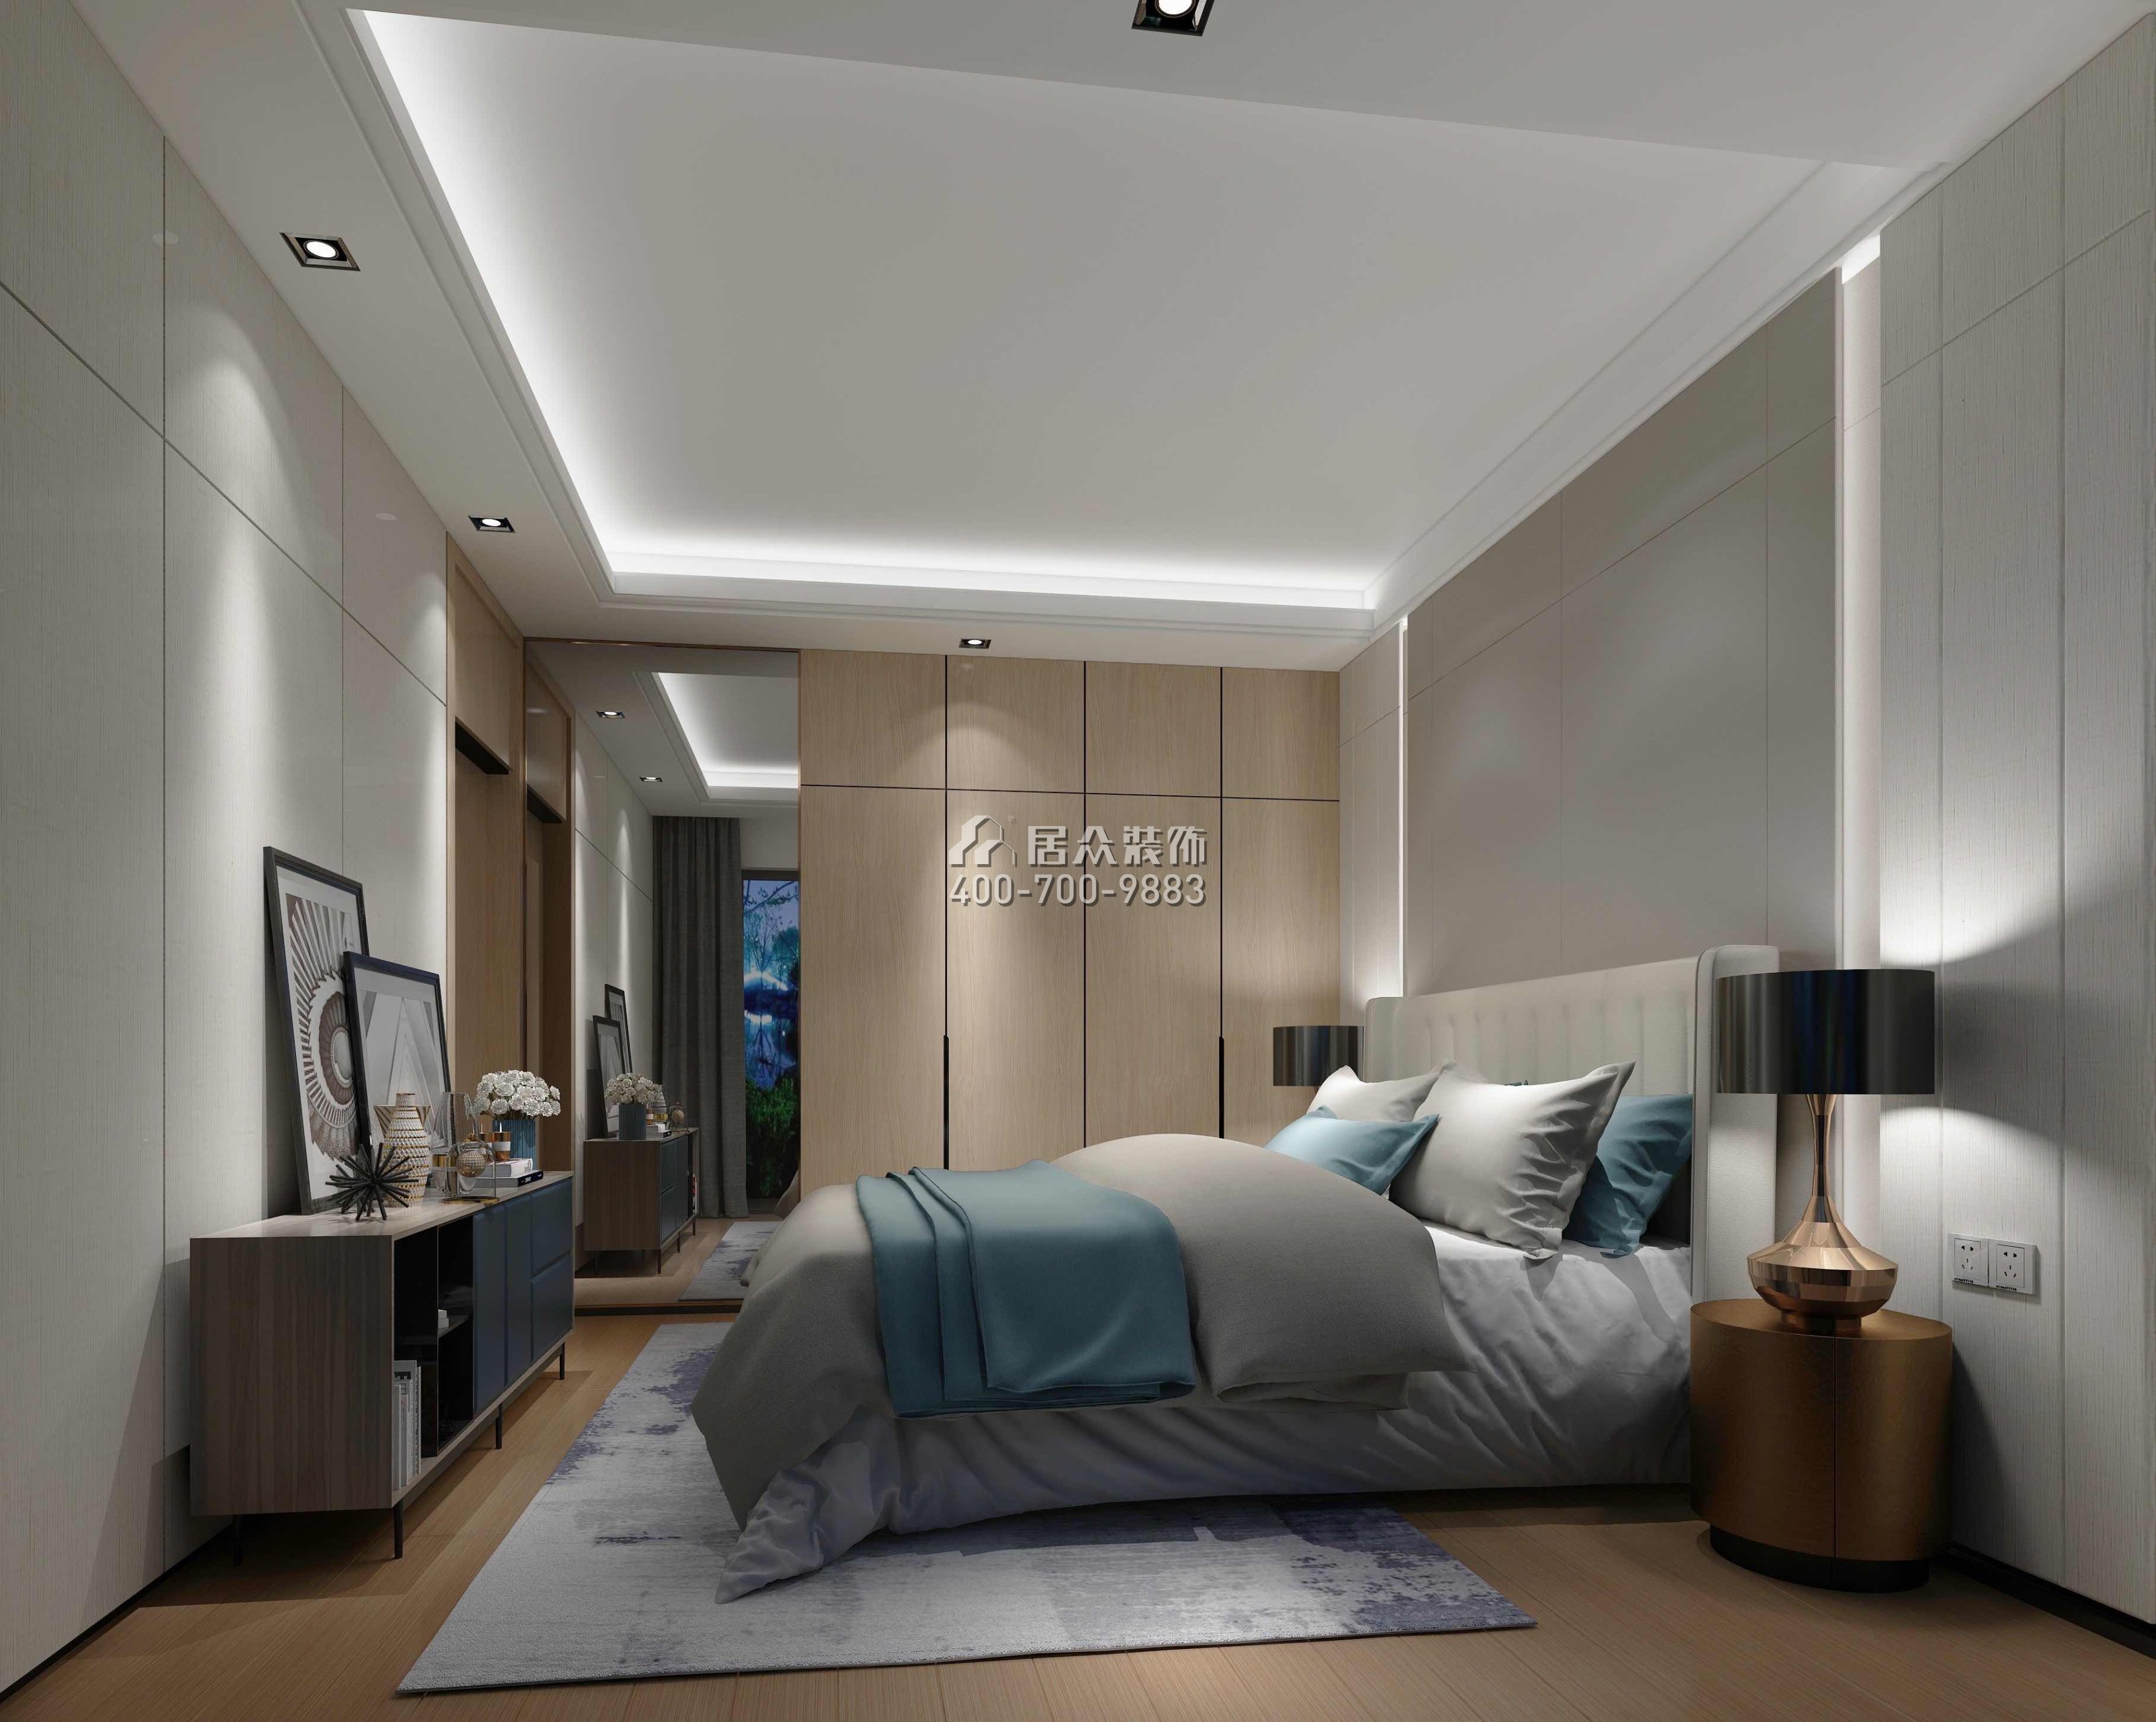 华发世纪城105平方米现代简约风格平层户型卧室装修效果图